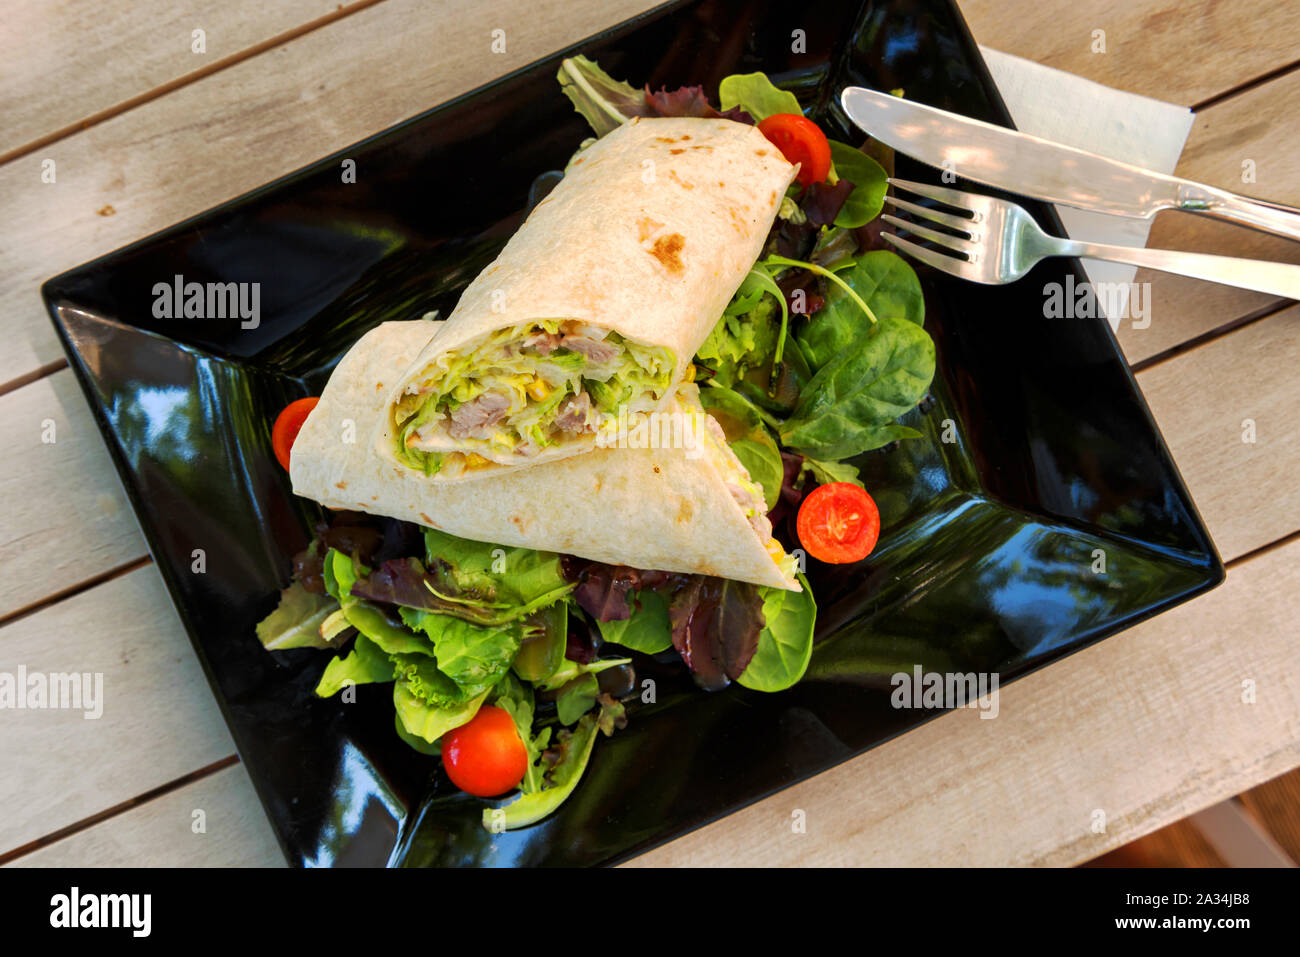 Burrito di pollo con ravanelli, peperoni, pomodori e insalata in una piastra su un tavolo di legno Foto Stock